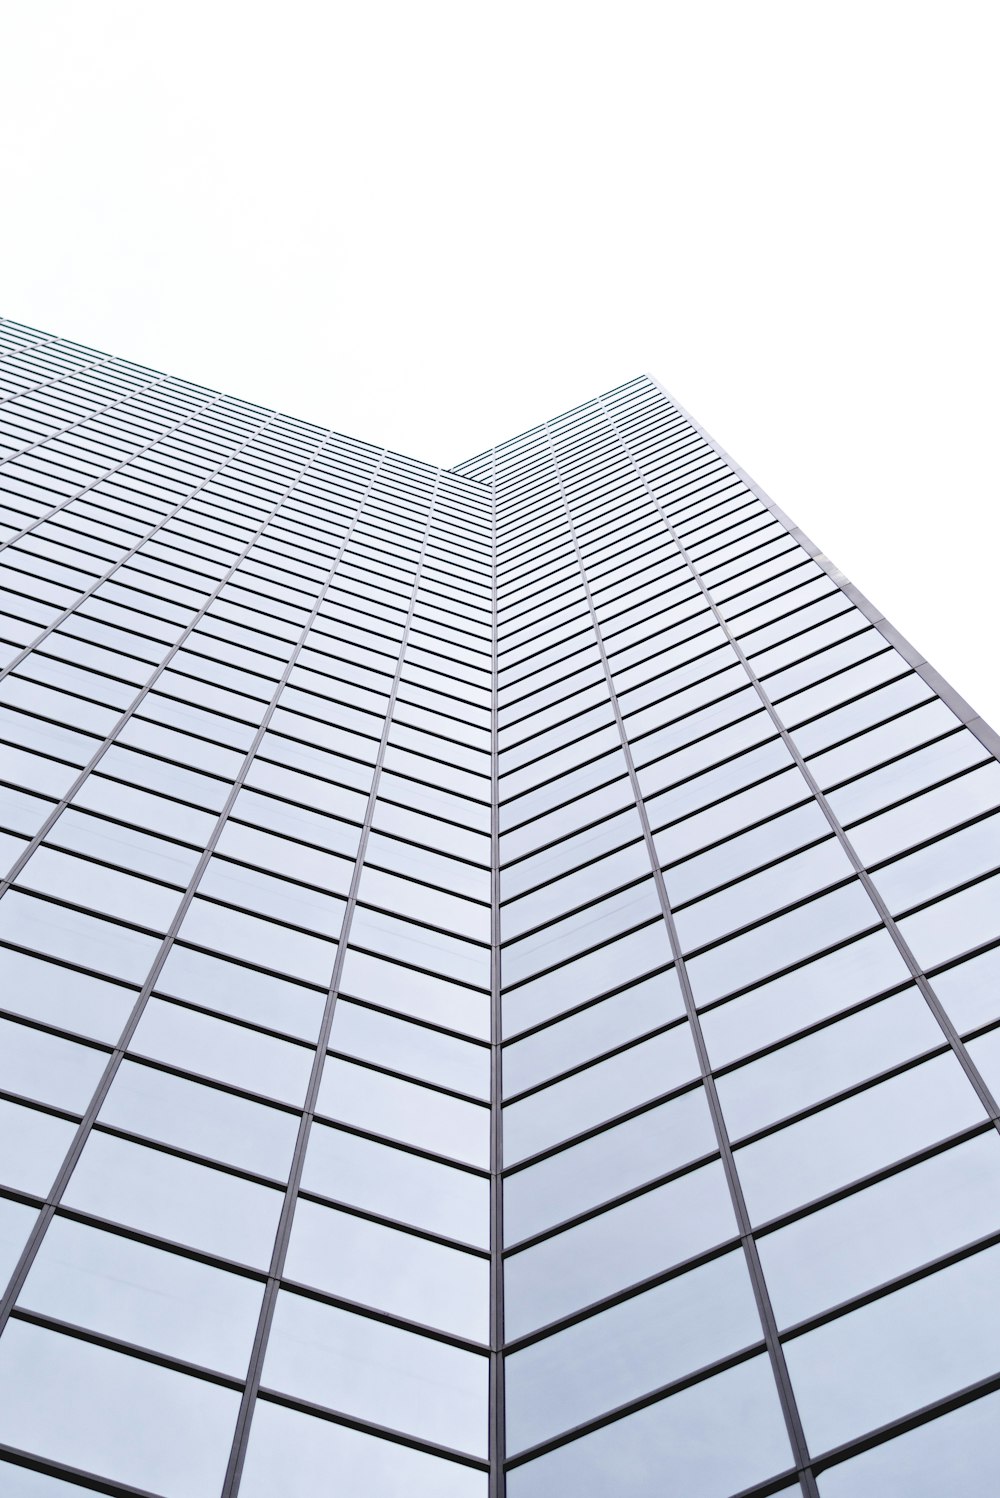 Low-Angle-Fotografie von gläsernen Hochhäusern